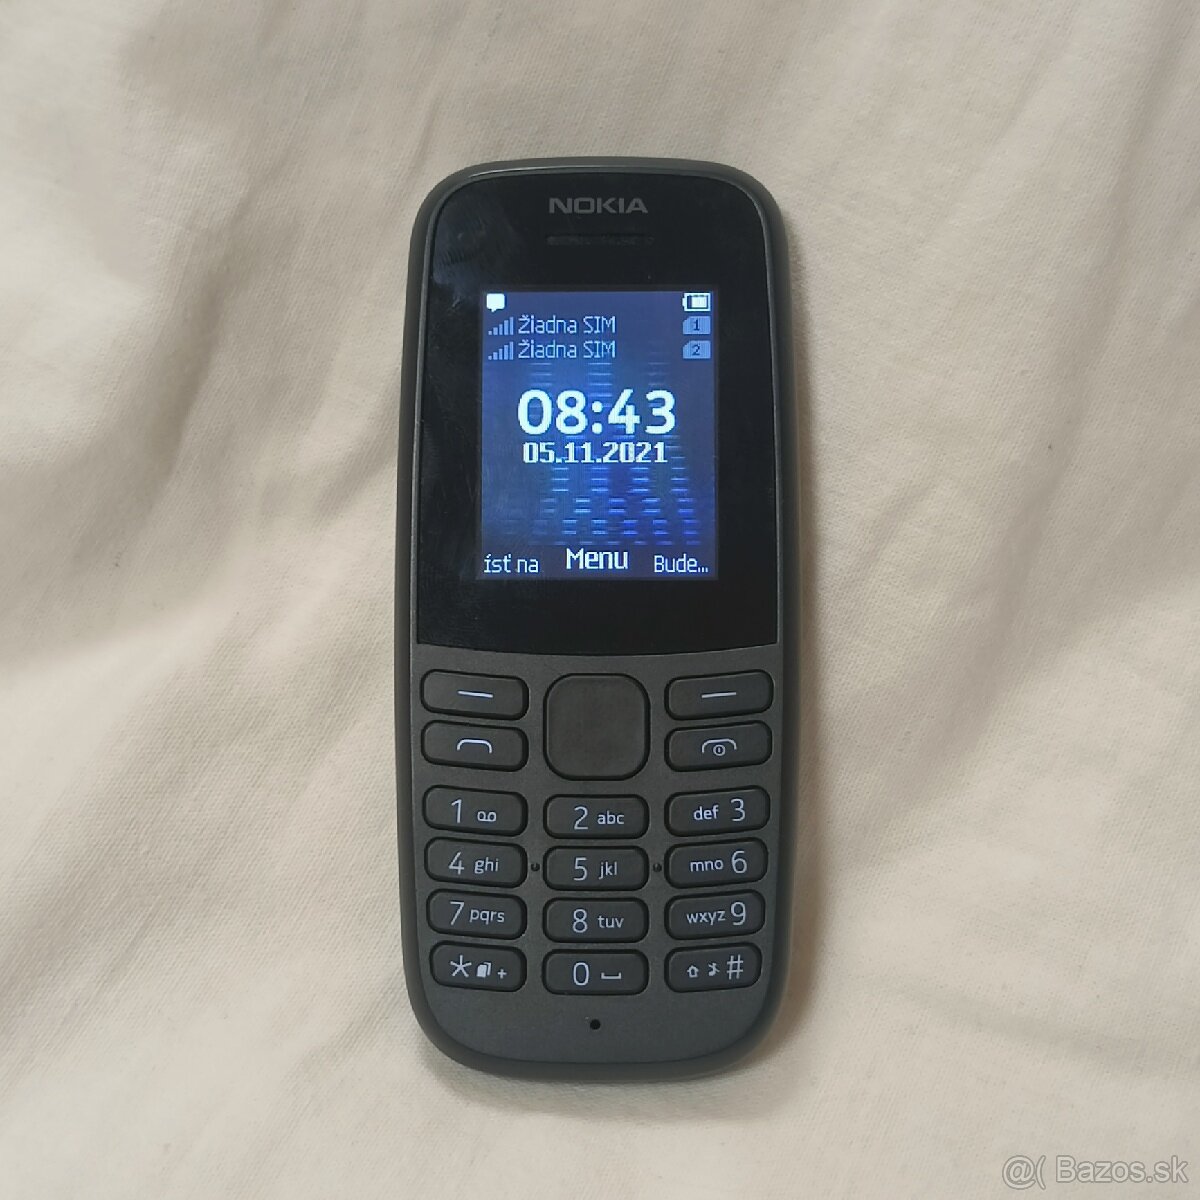 Mobilný telefón Nokia 105 (2019),
čierny, Dual SIM